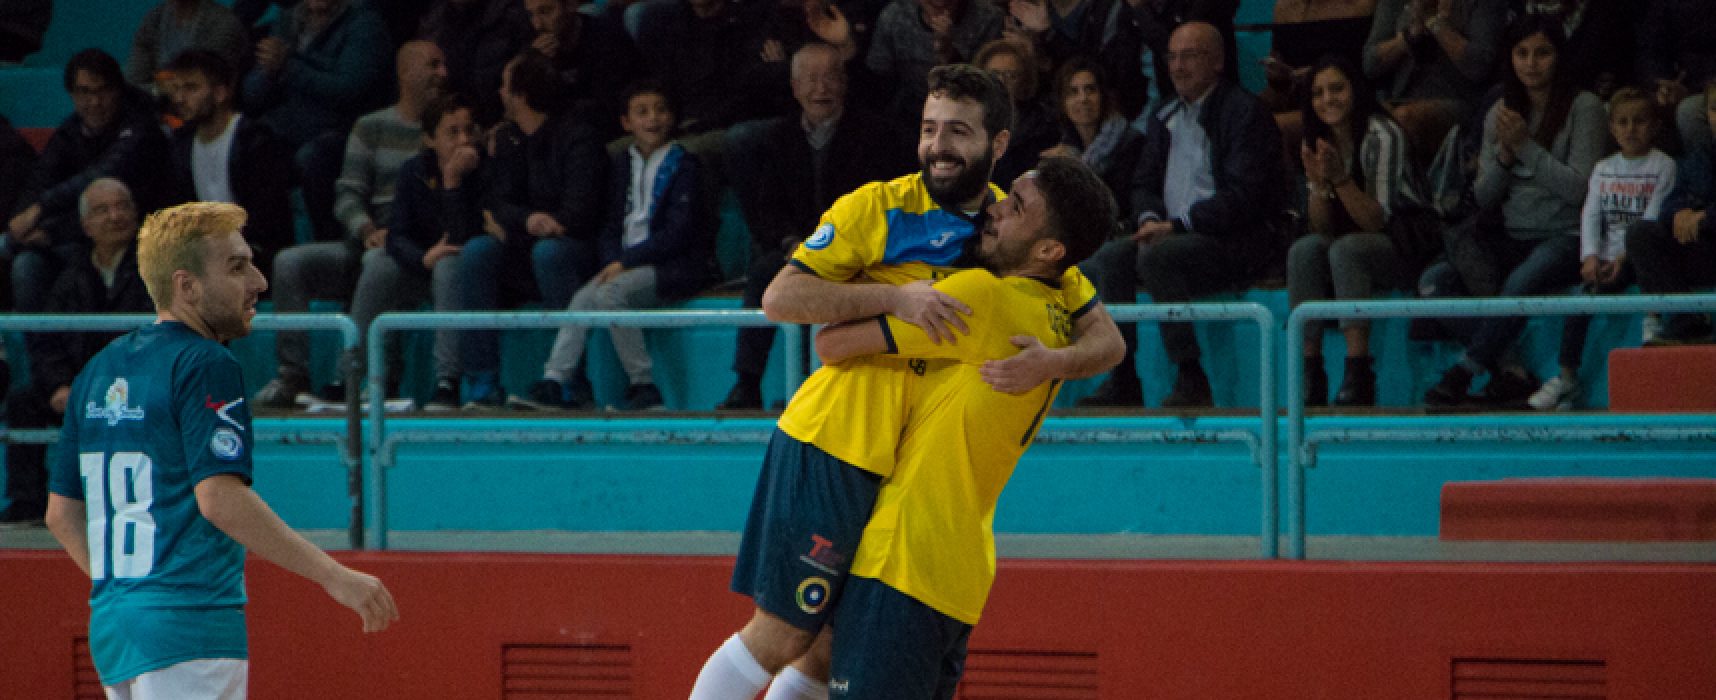 Ruggito Futsal Bisceglie, contro la Salinis arriva il primo successo stagionale